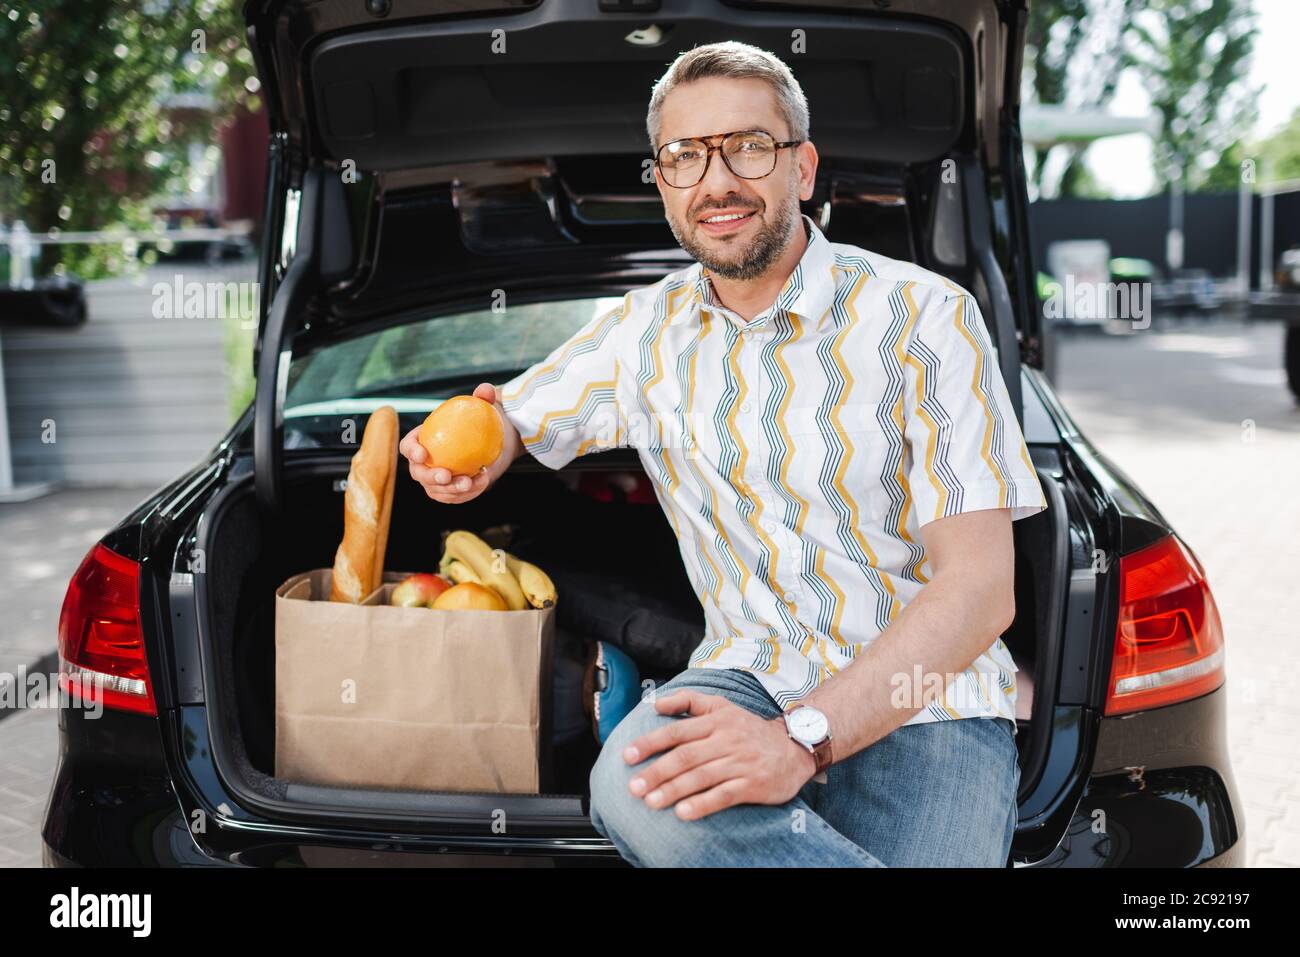 Lächelnder Mann, der Orange in der Nähe einer Einkaufstasche mit Essen und offenem Kofferraum auf der Stadtstraße hält Stockfoto